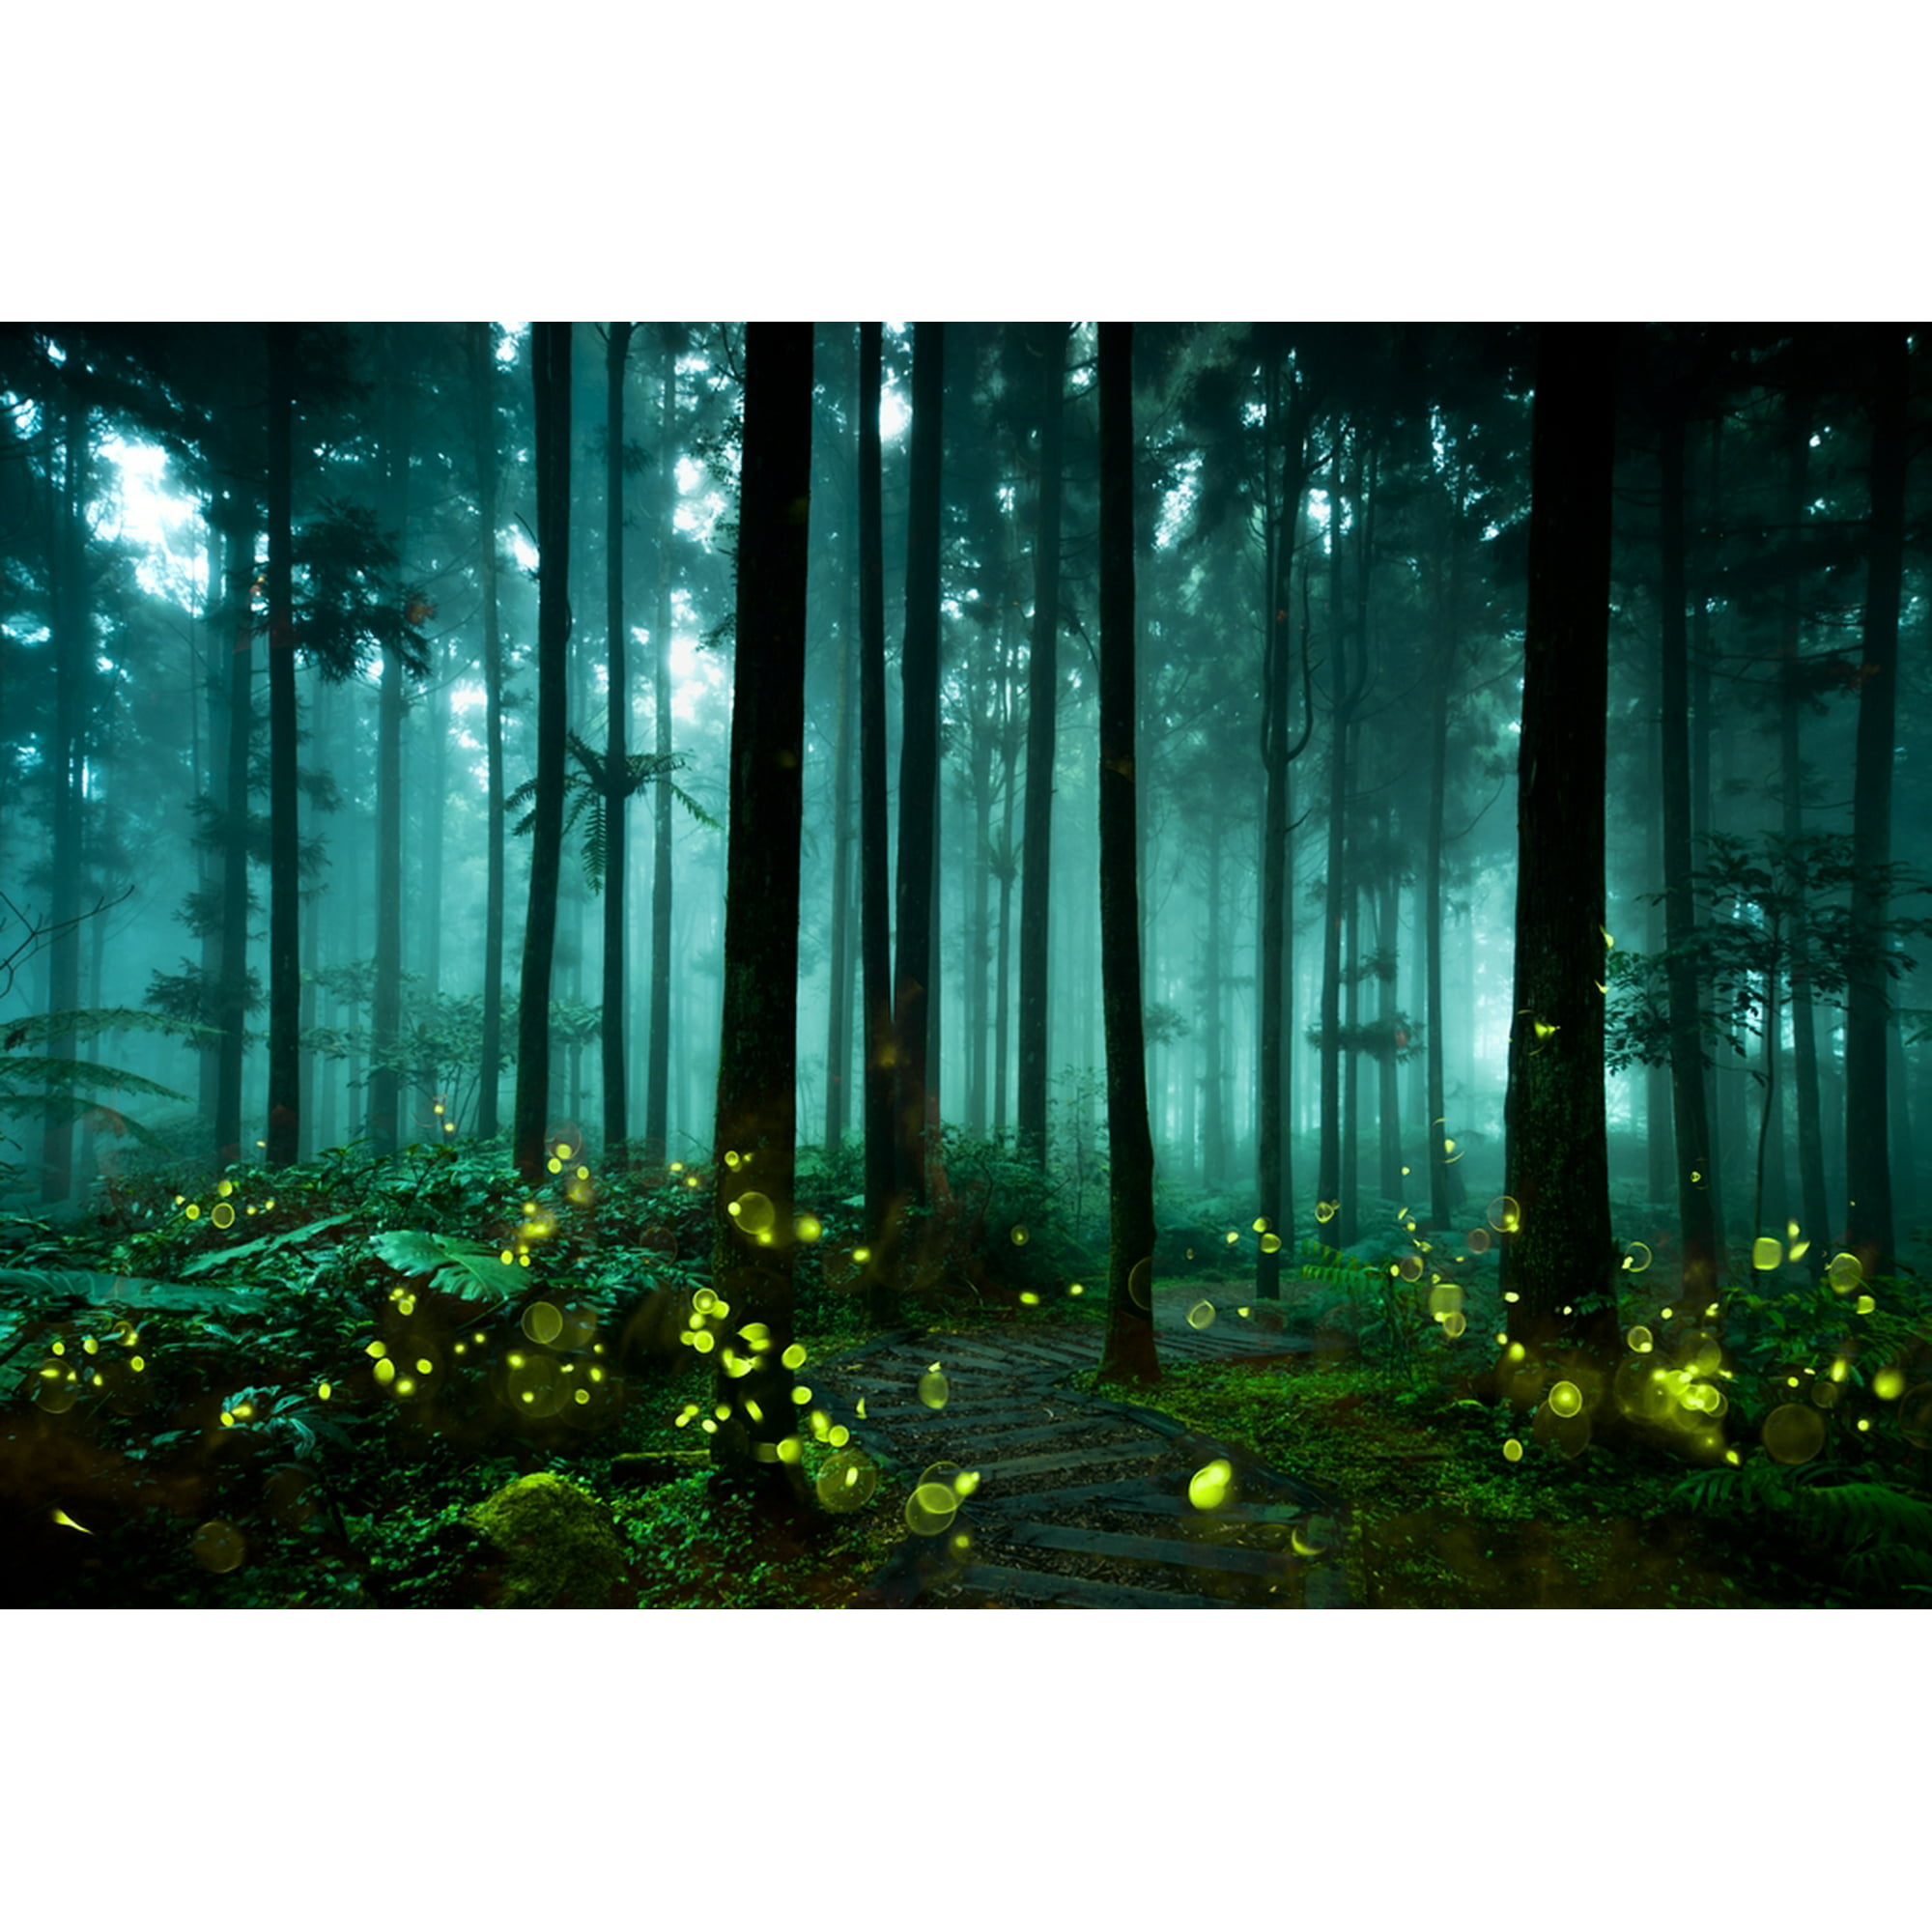 fireflies nature wallpaper